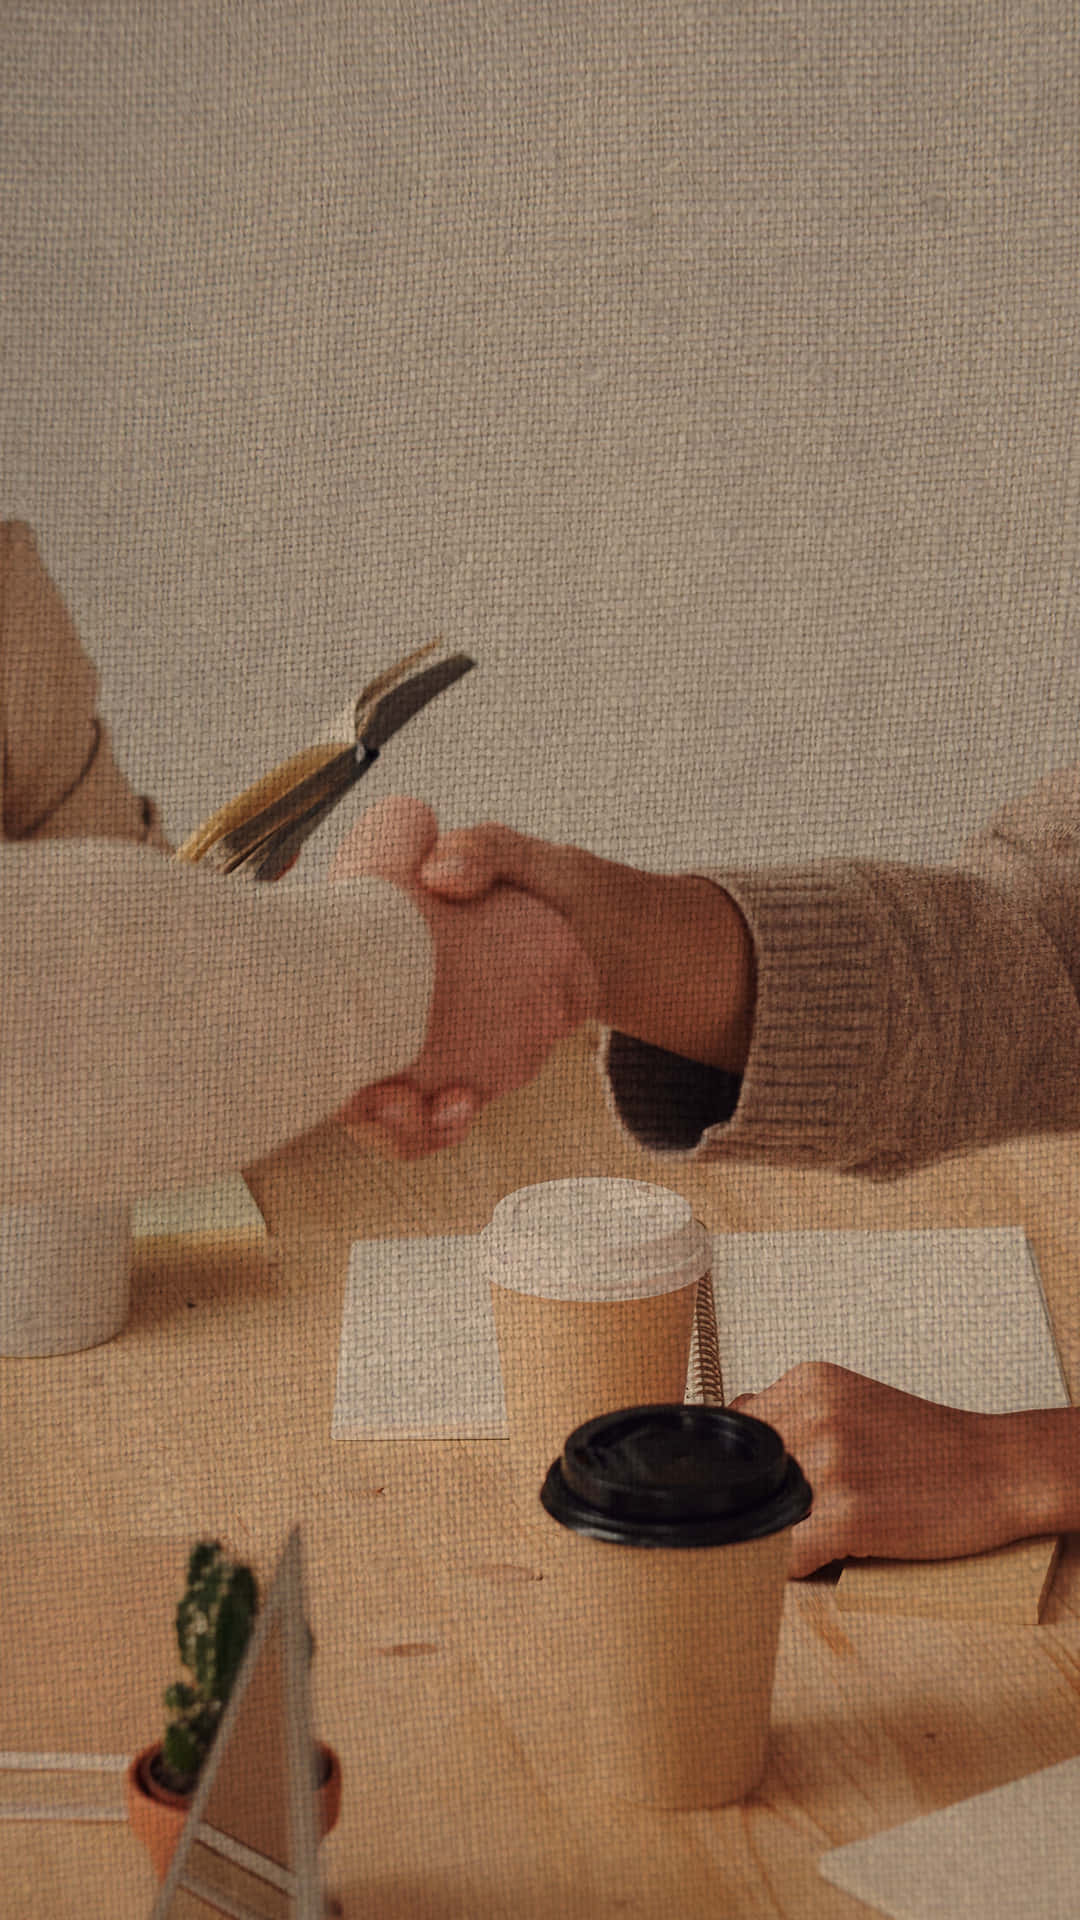 Handskakningmed Kaffe. Wallpaper